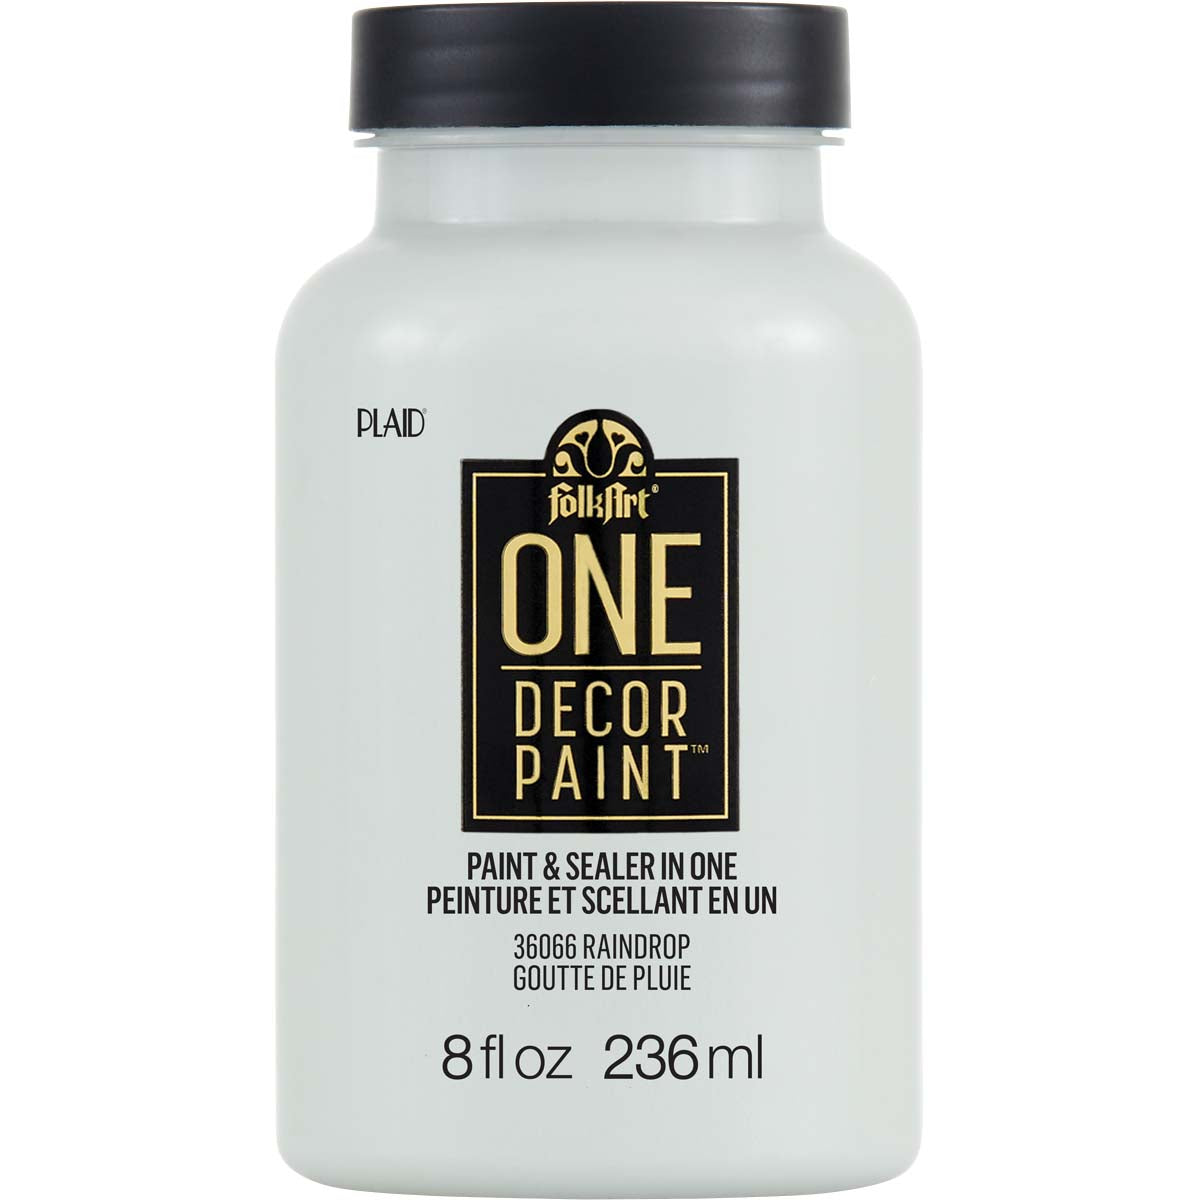 One Decor Paint - Paint & Sealer